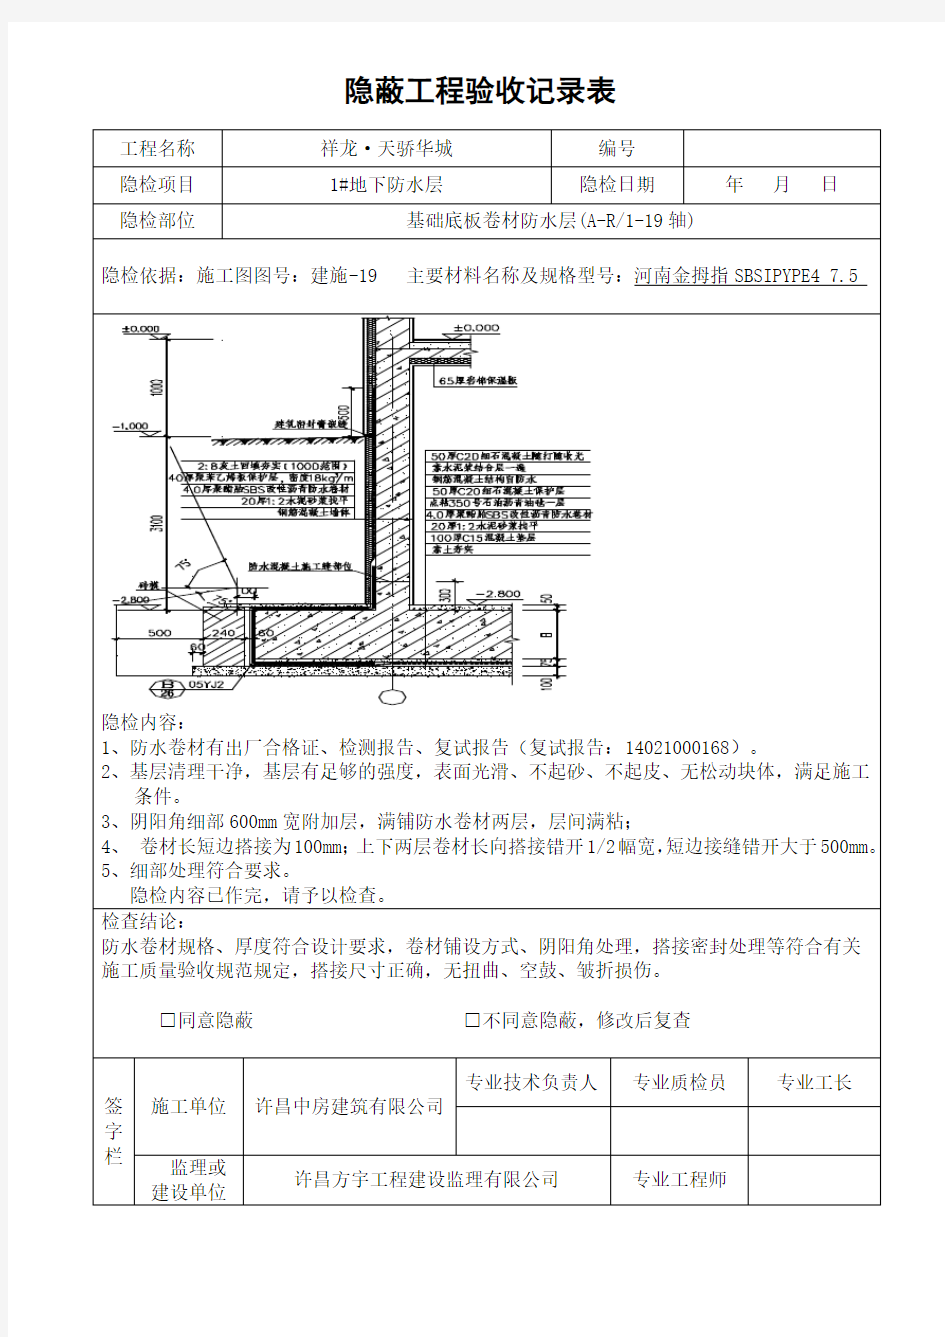 地下室防水工程隐蔽工程验收记录表(完整版)